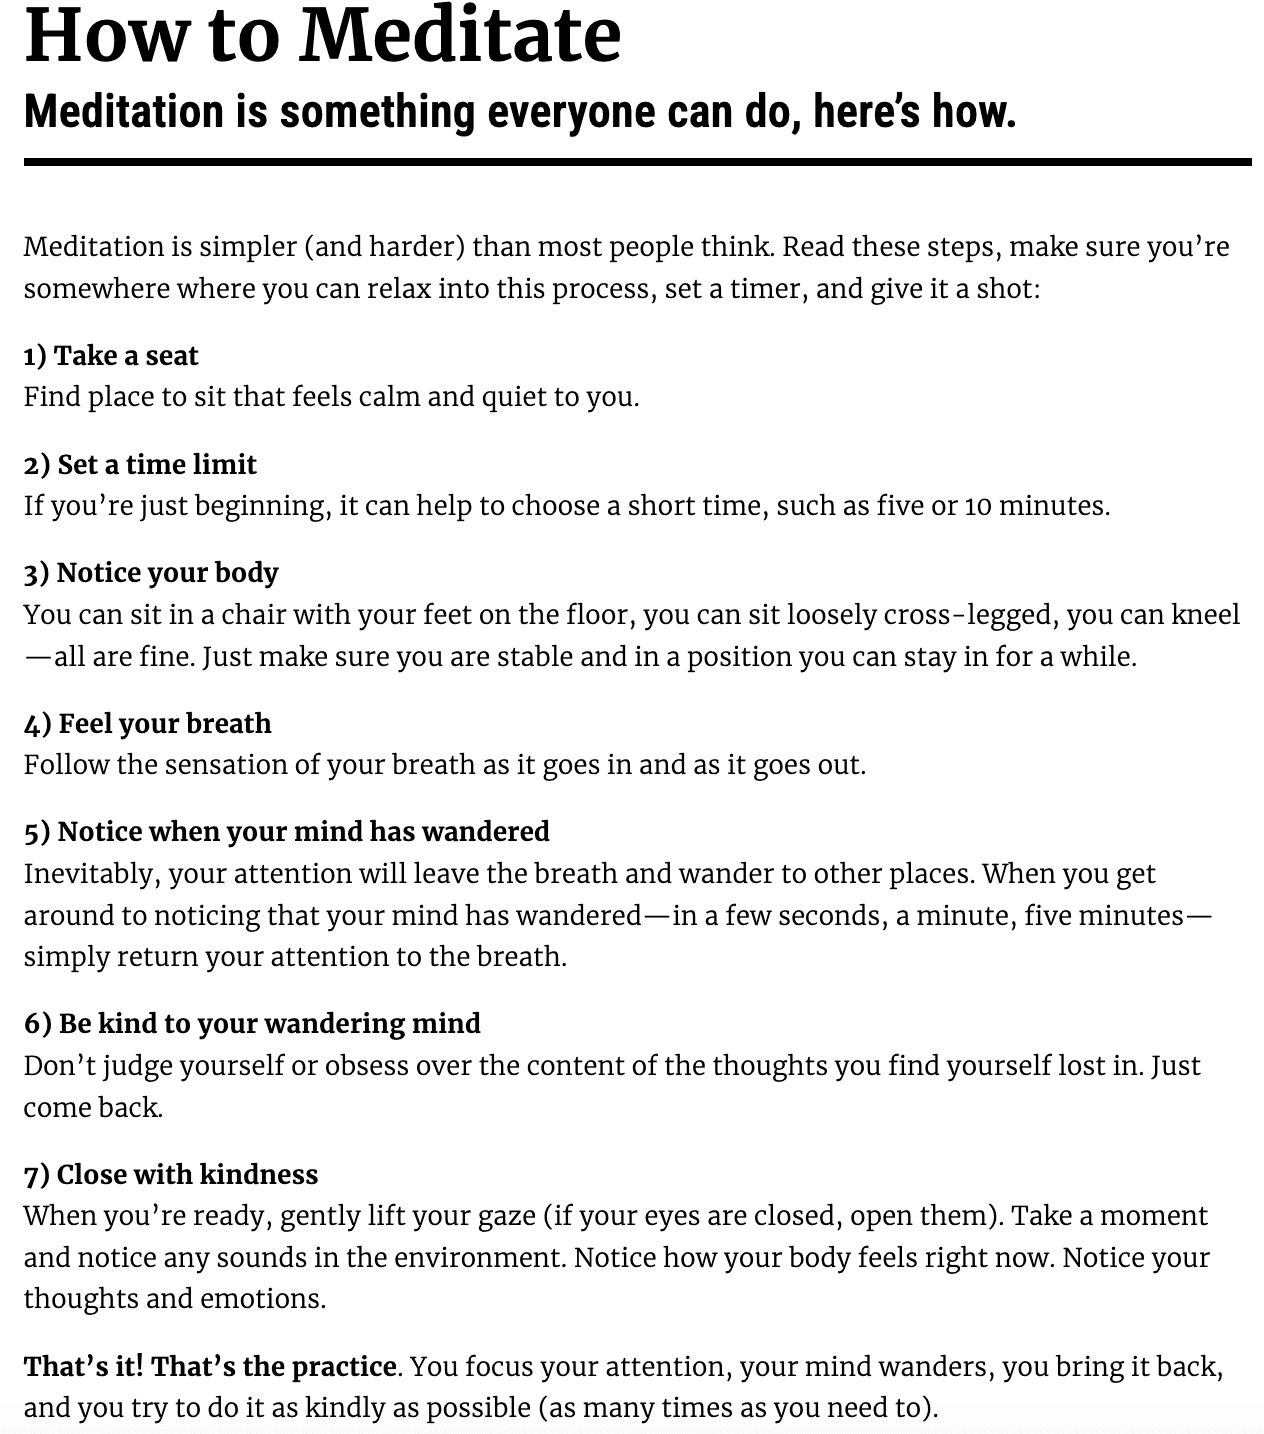 Det finnes mange enkle måter å starte med meditasjon på. Her er et forslag fra Mindful.